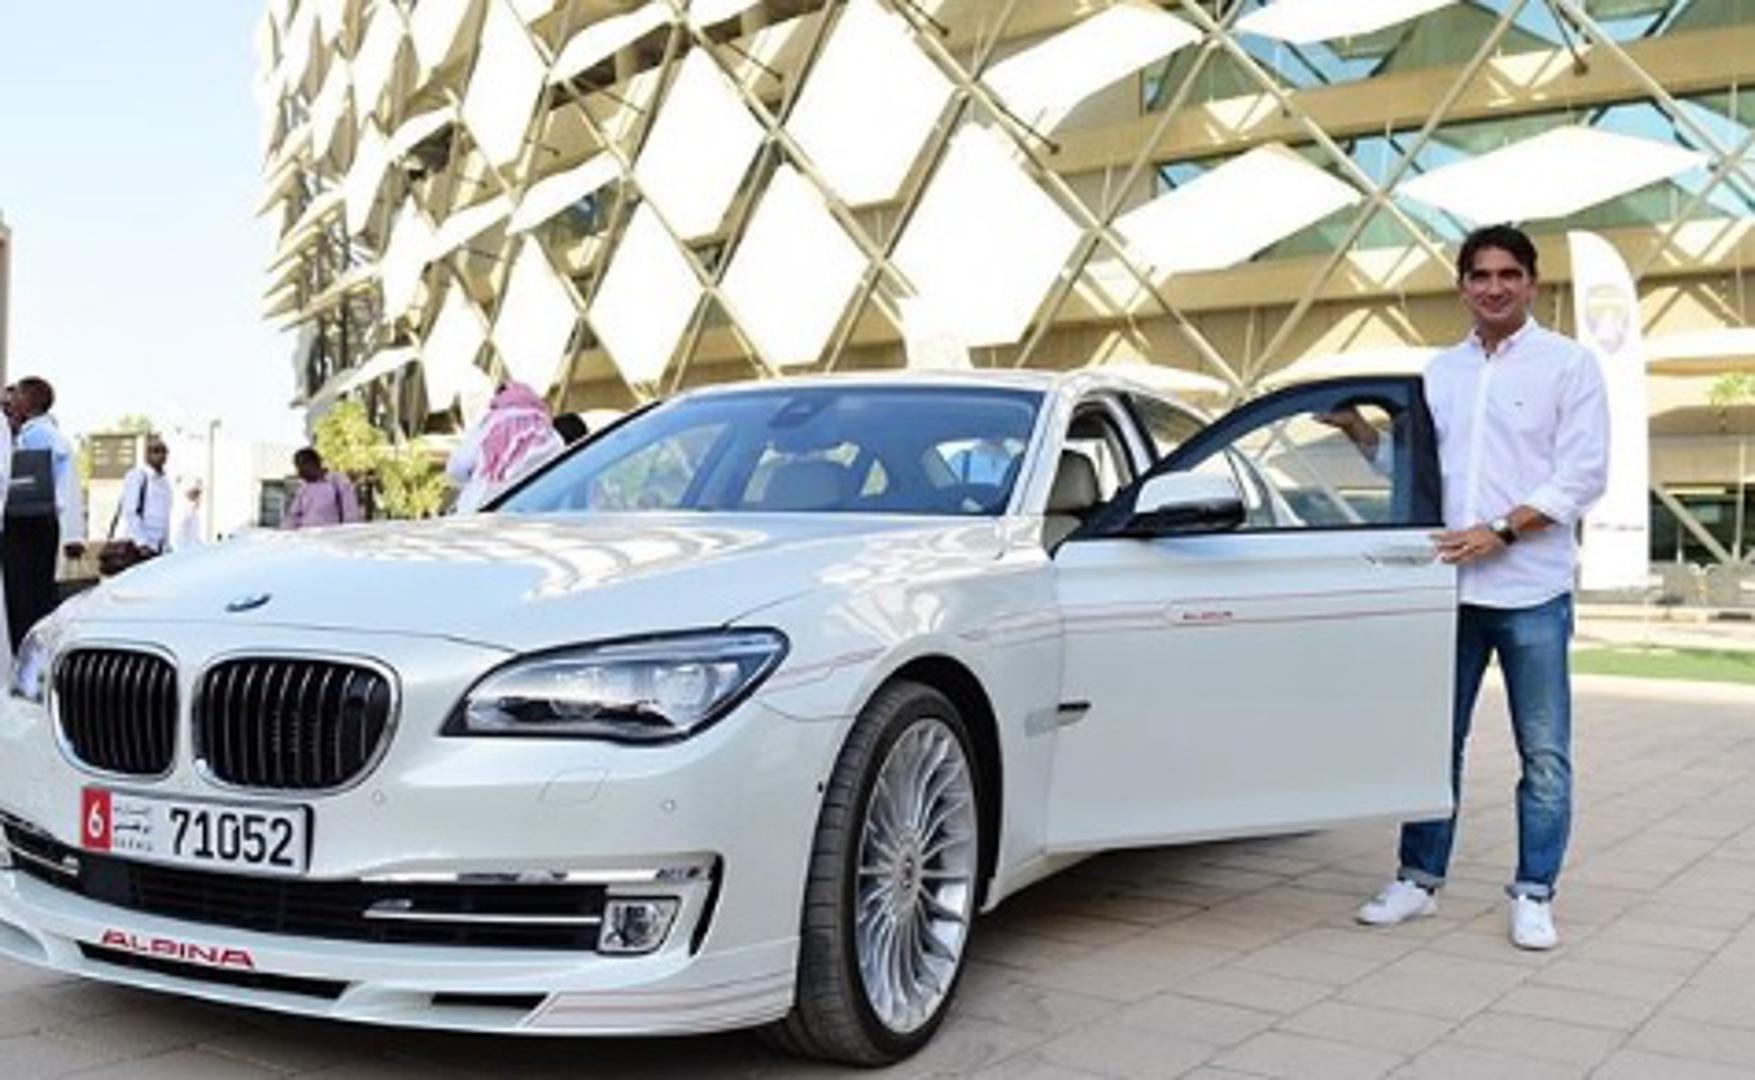 Izbornik Zlatko Dalić u Al-Ainu od vlasnika kluba dobio je bijeli BMW 715 vrijedan 350 tisuća kuna i još uvijek ga vozi